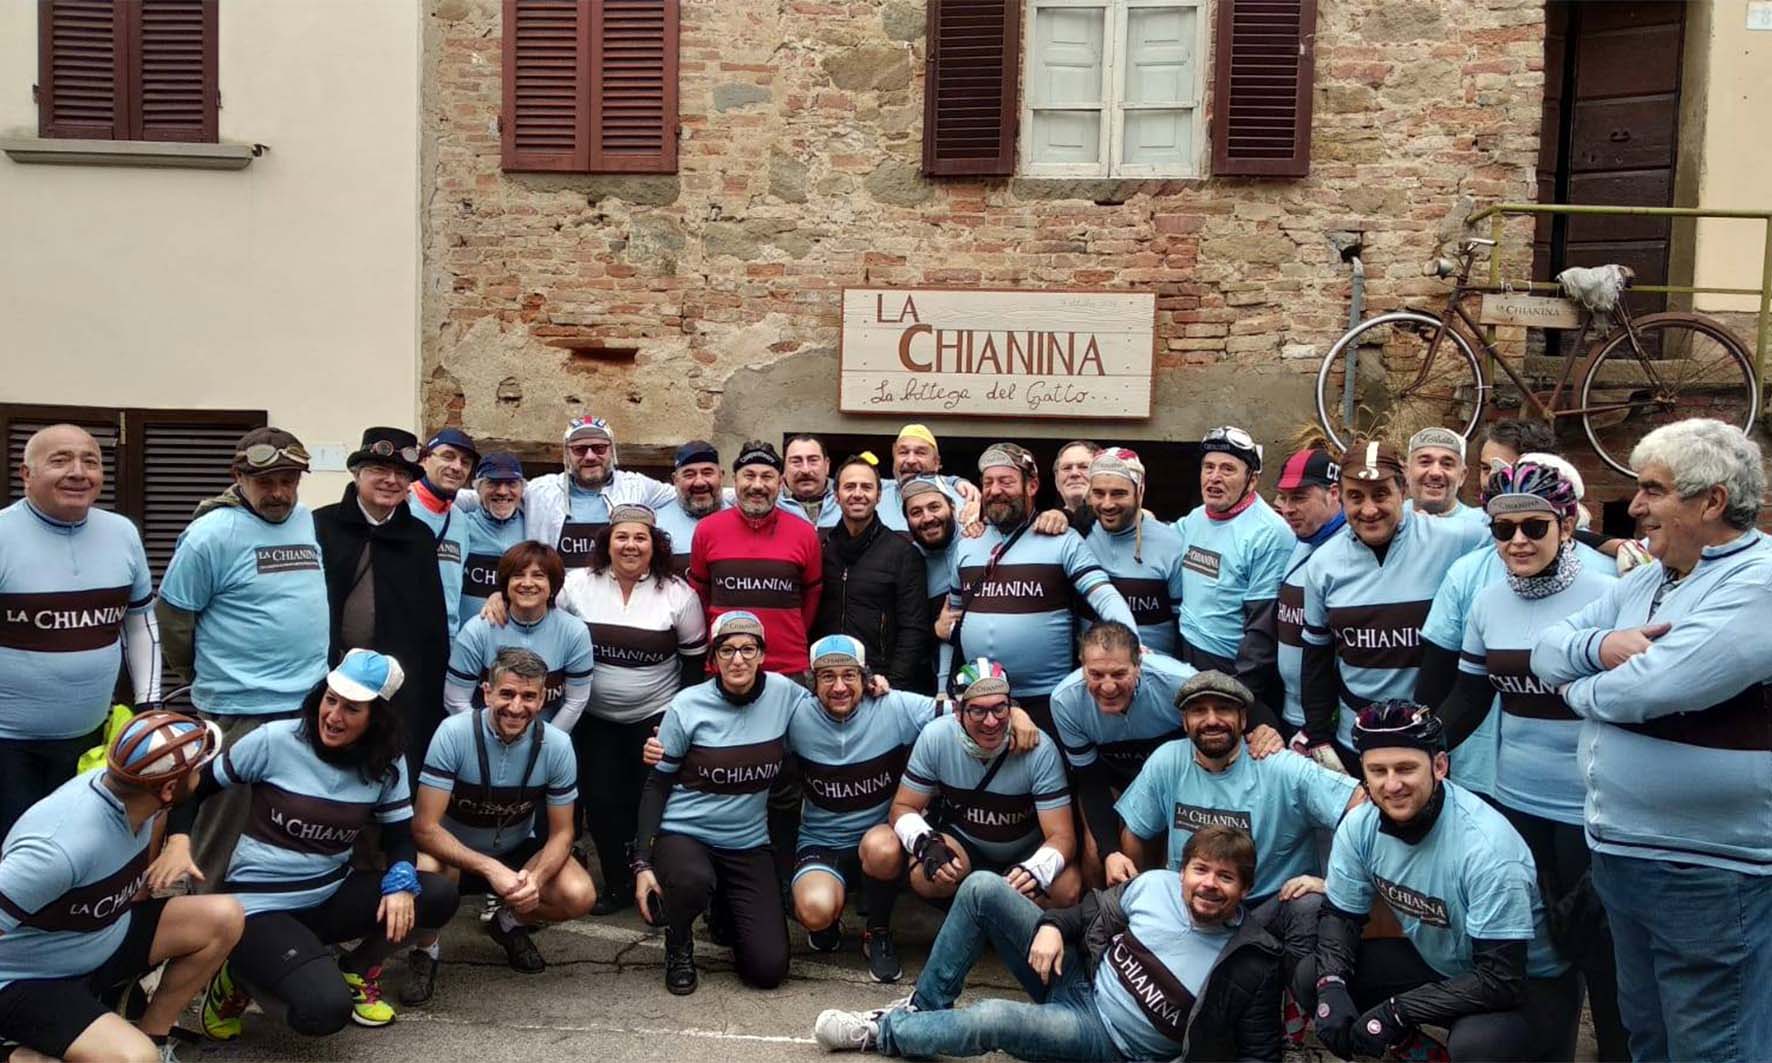 La Chianina, due le iniziative di ciclismo storico: fumetti e pedali